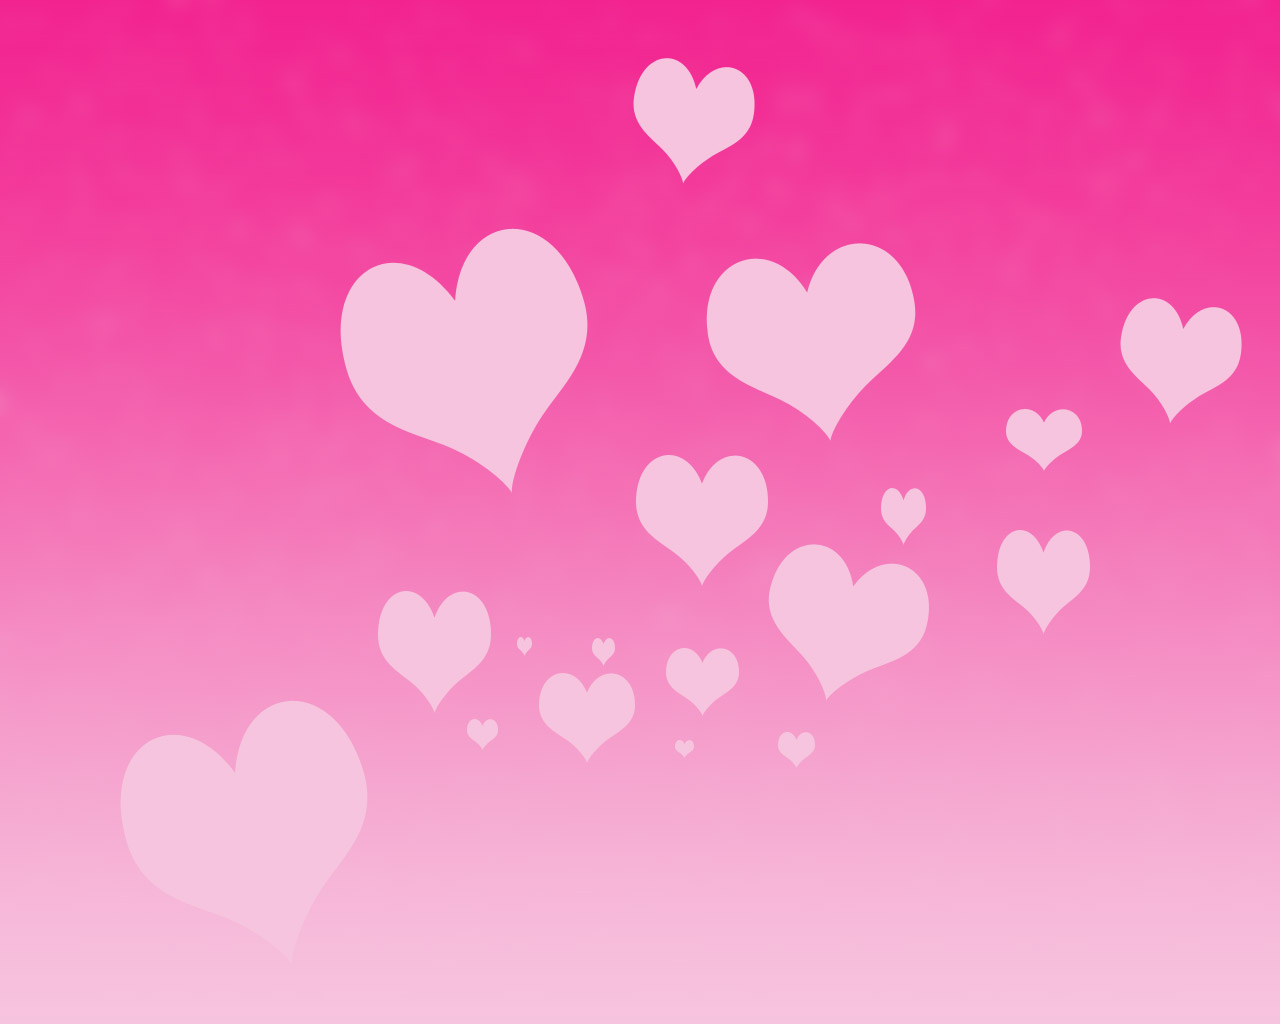 ピンクのハートの壁紙,心臓,ピンク,愛,赤,空